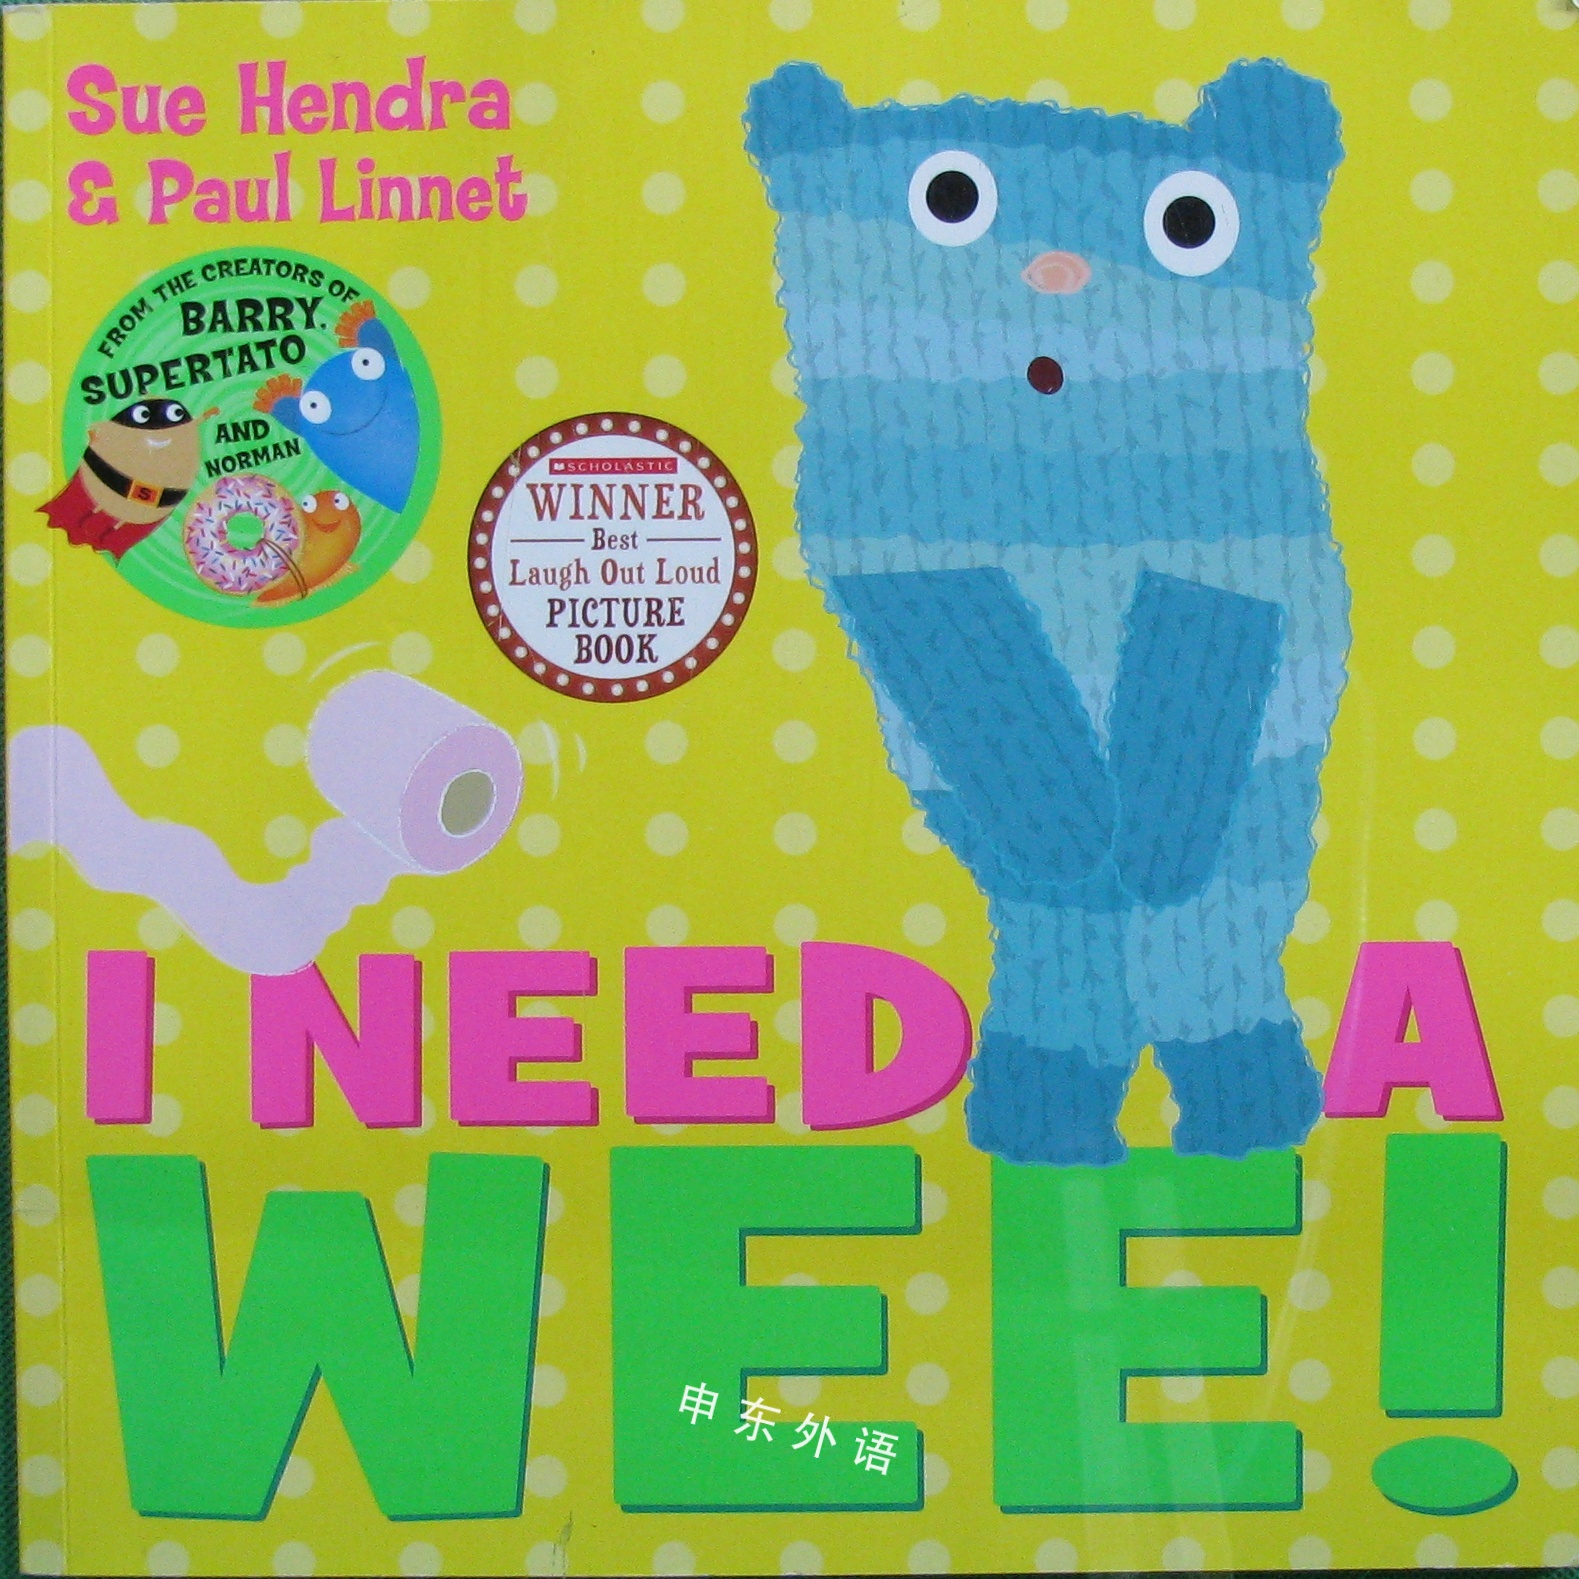 I Need A Wee H 作者与插画 儿童图书 进口图书 进口书 原版书 绘本书 英文 原版图书 儿童纸板书 外语图书 进口儿童书 原版儿童书